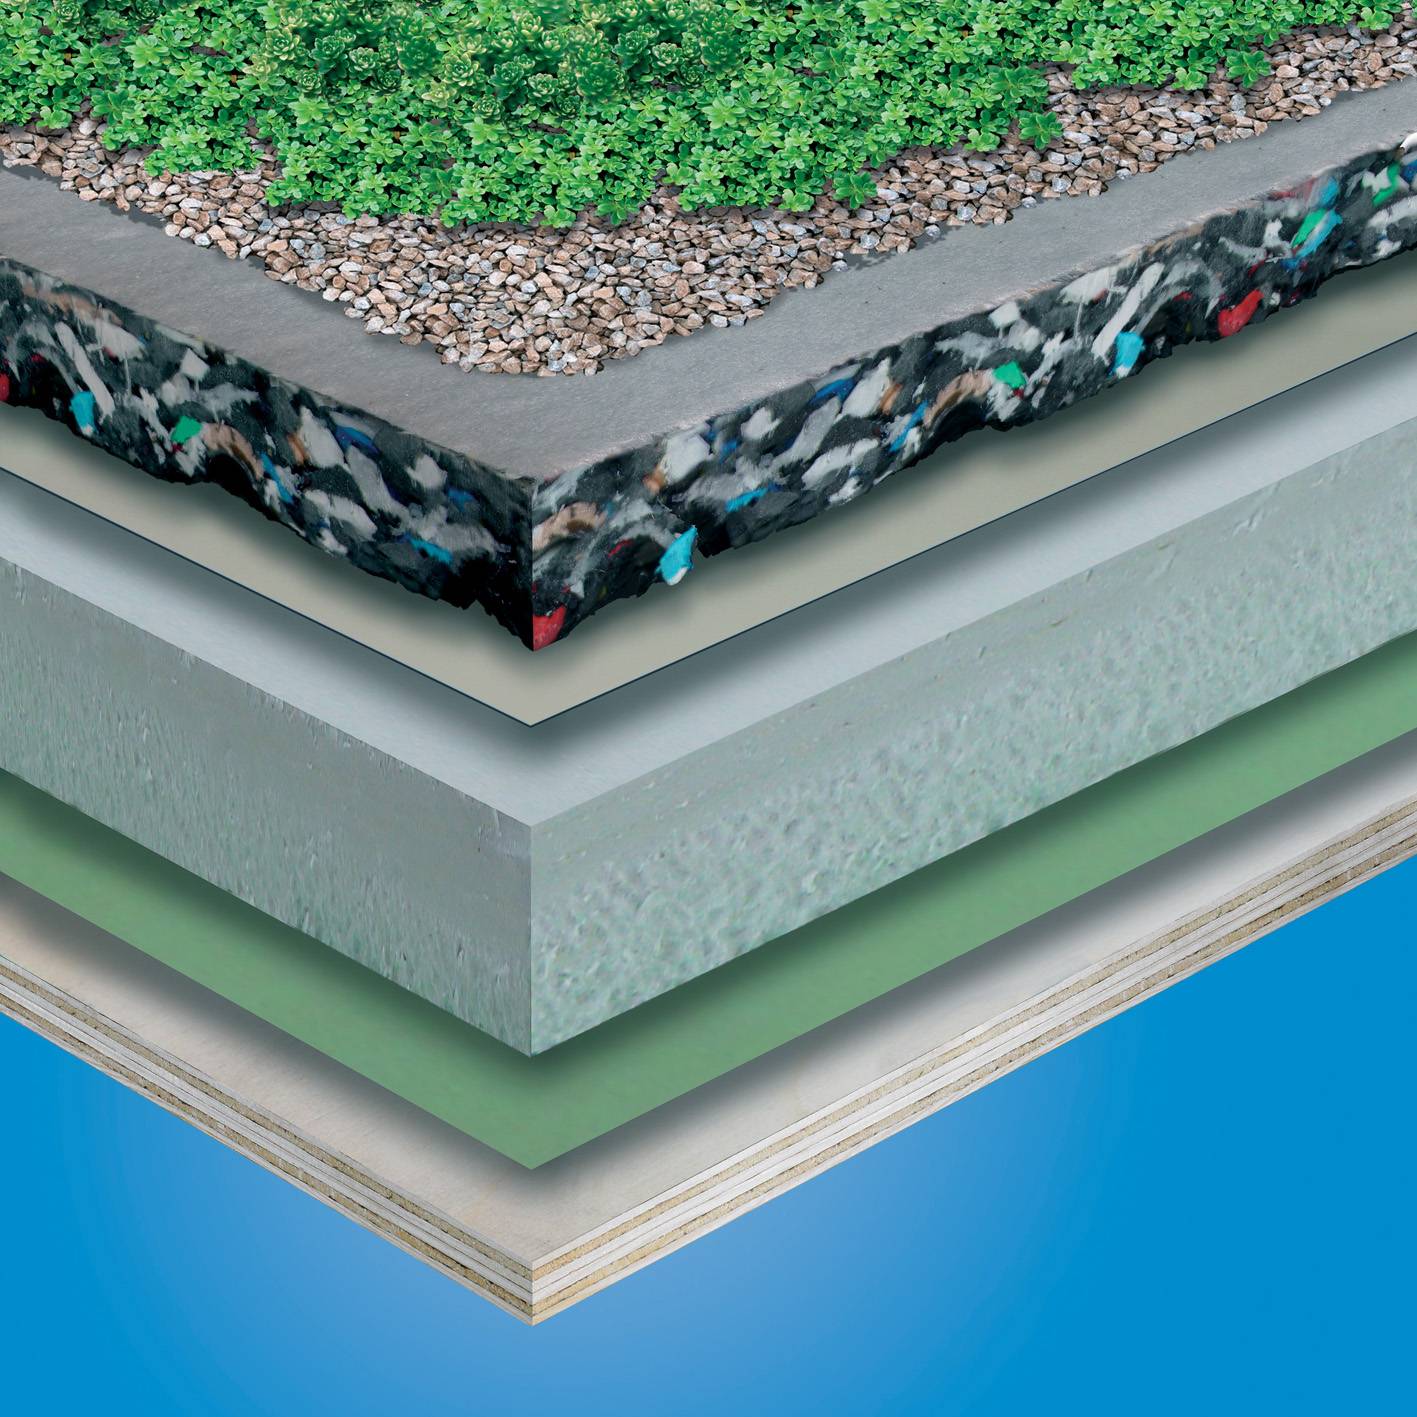 G410-EL Green Roof System - Cuspated PUR Foam Drainage Board